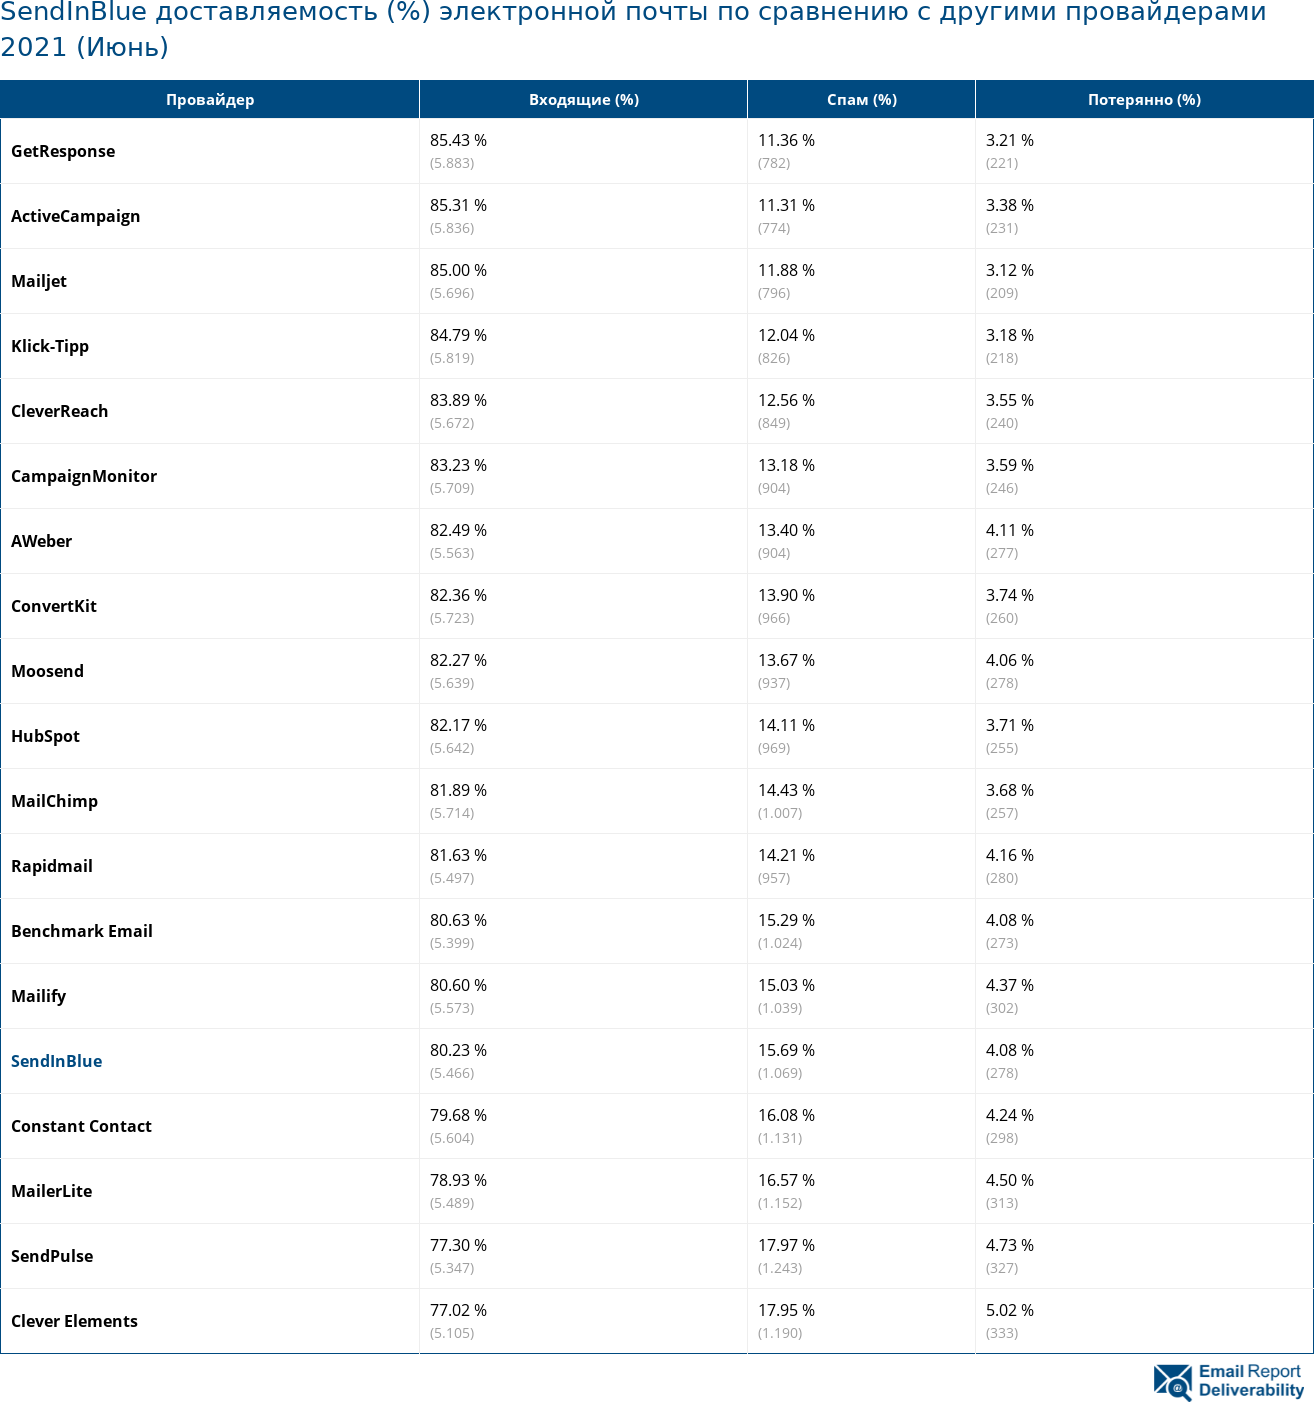 SendInBlue доставляемость (%) электронной почты по сравнению с другими провайдерами 2021 (Июнь)